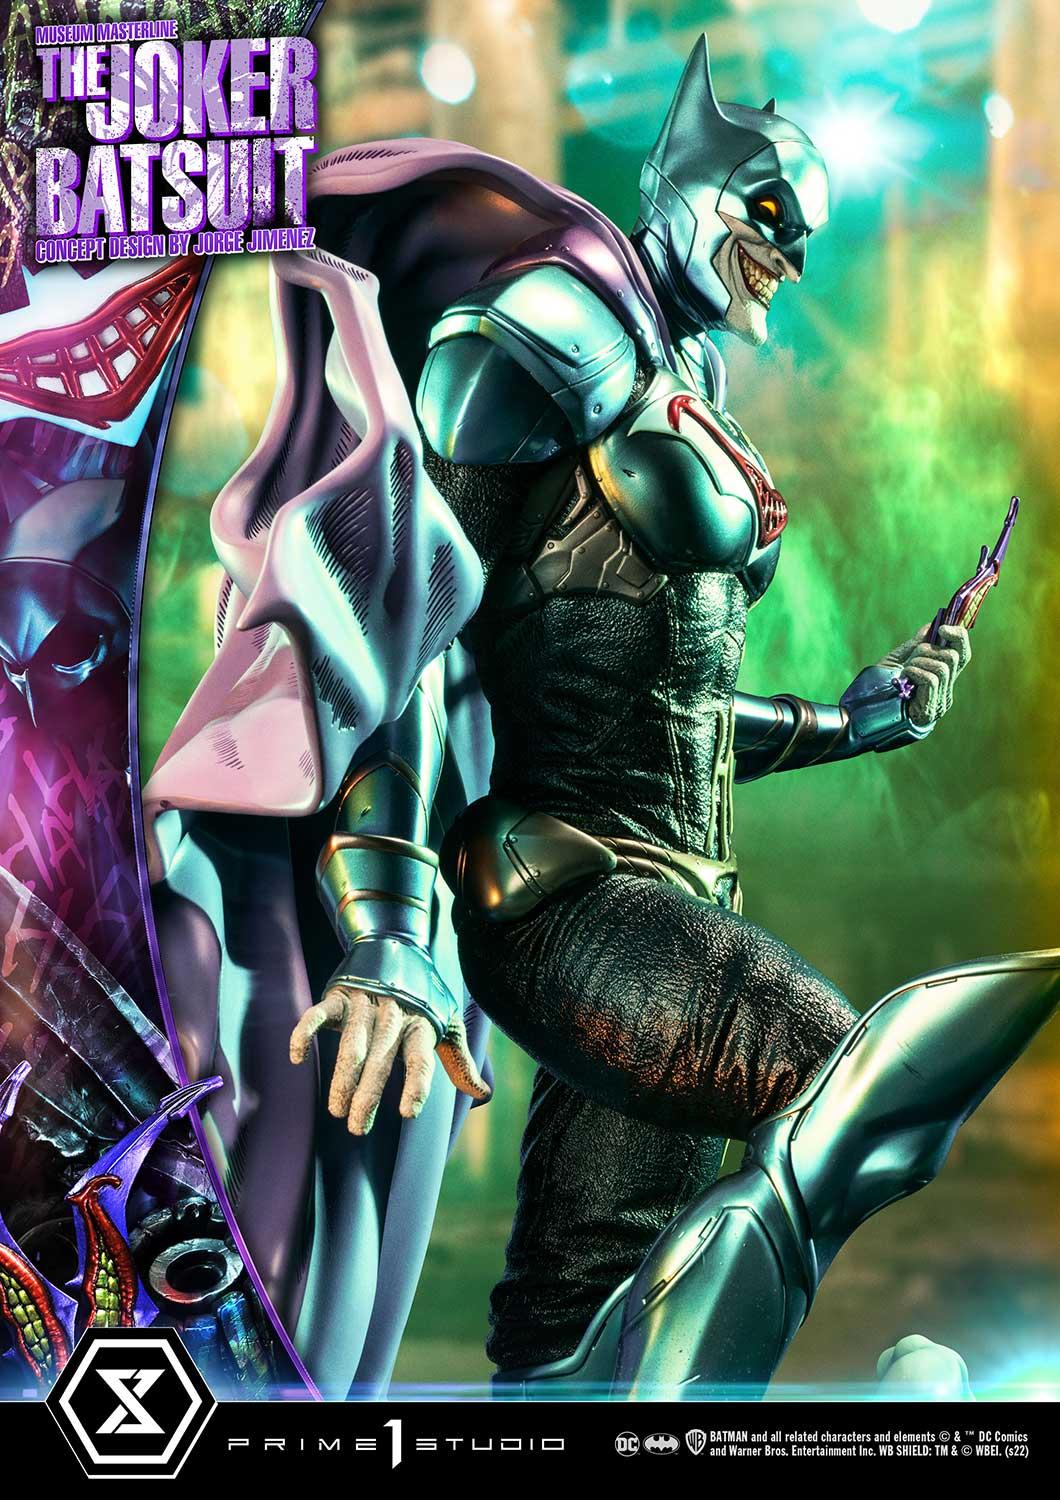 The Joker™ - The Joker™ vs Batman™ Poster